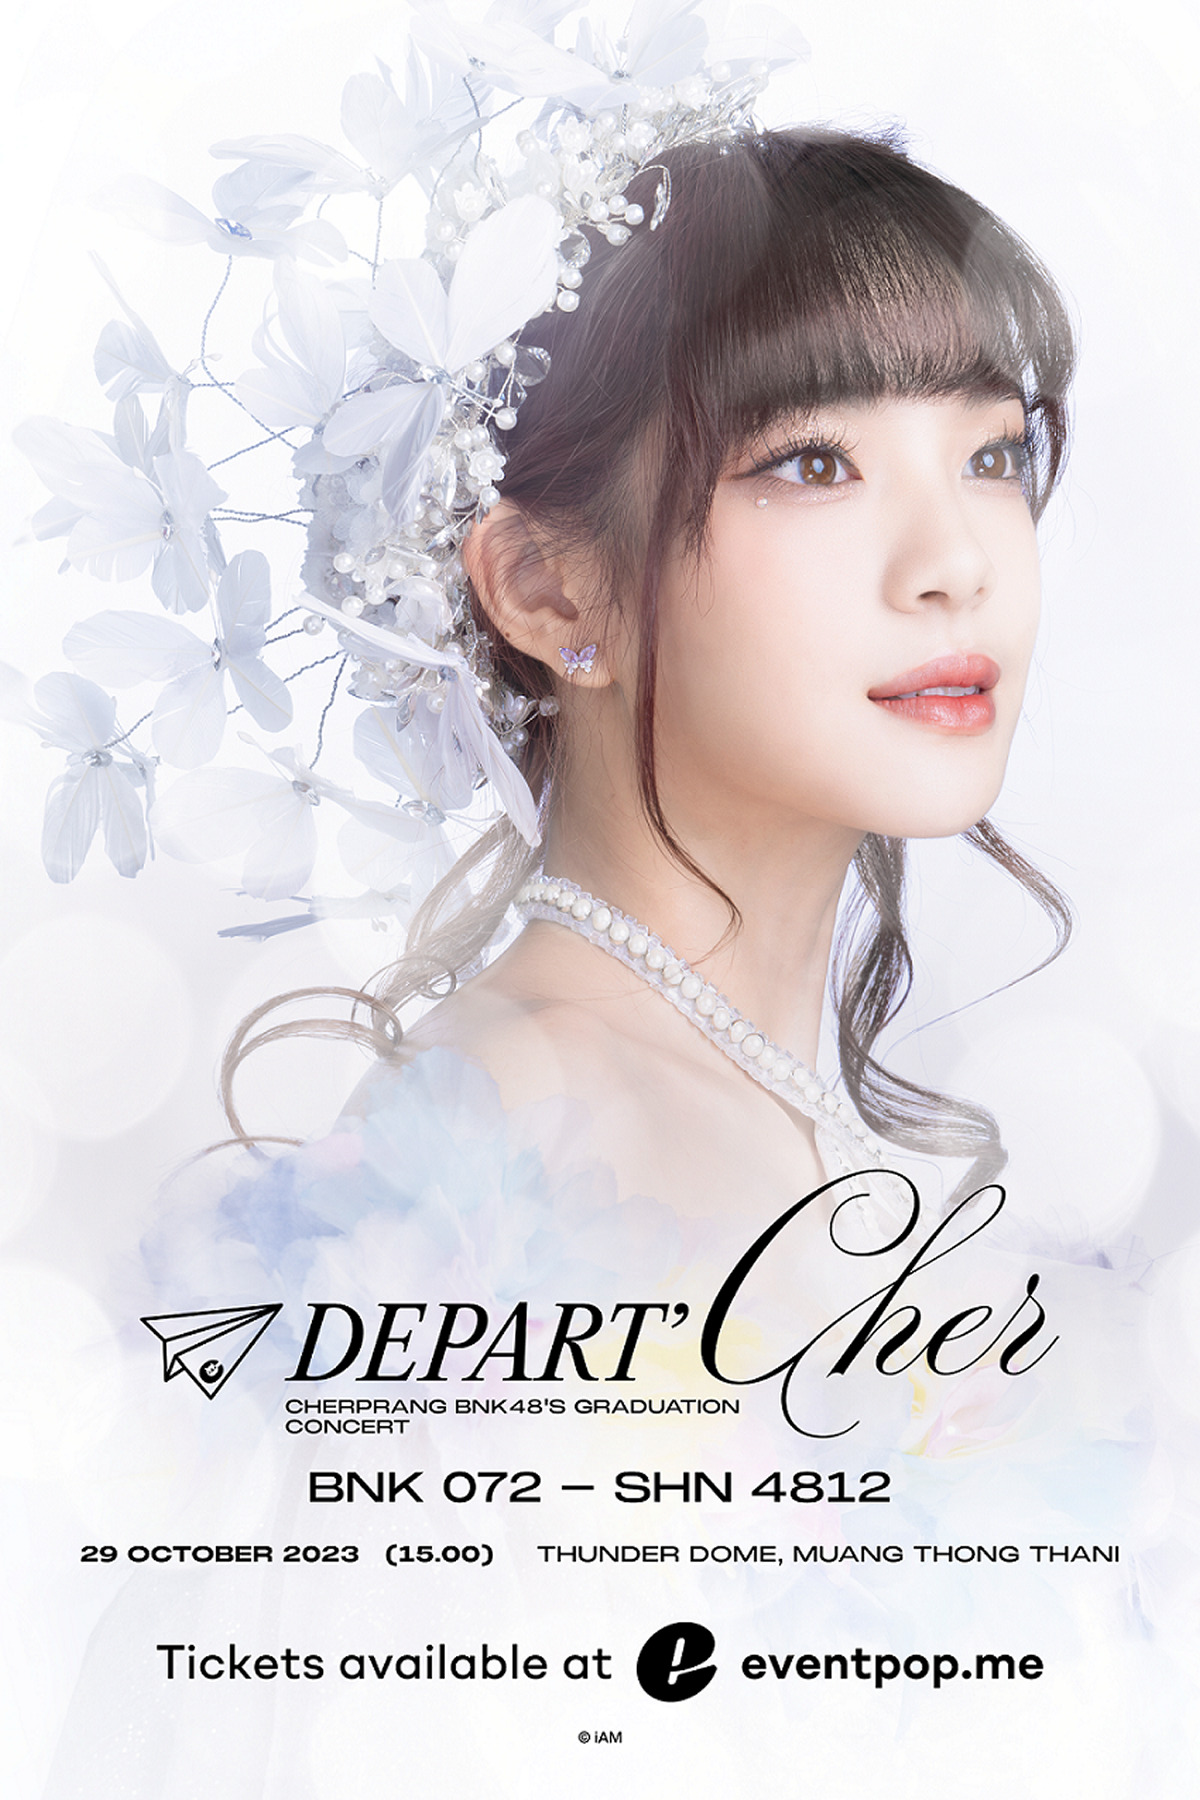 チャープランBNK48卒業コンサート「Depart’Cher Cherprang BNK48’s Graduation」開催